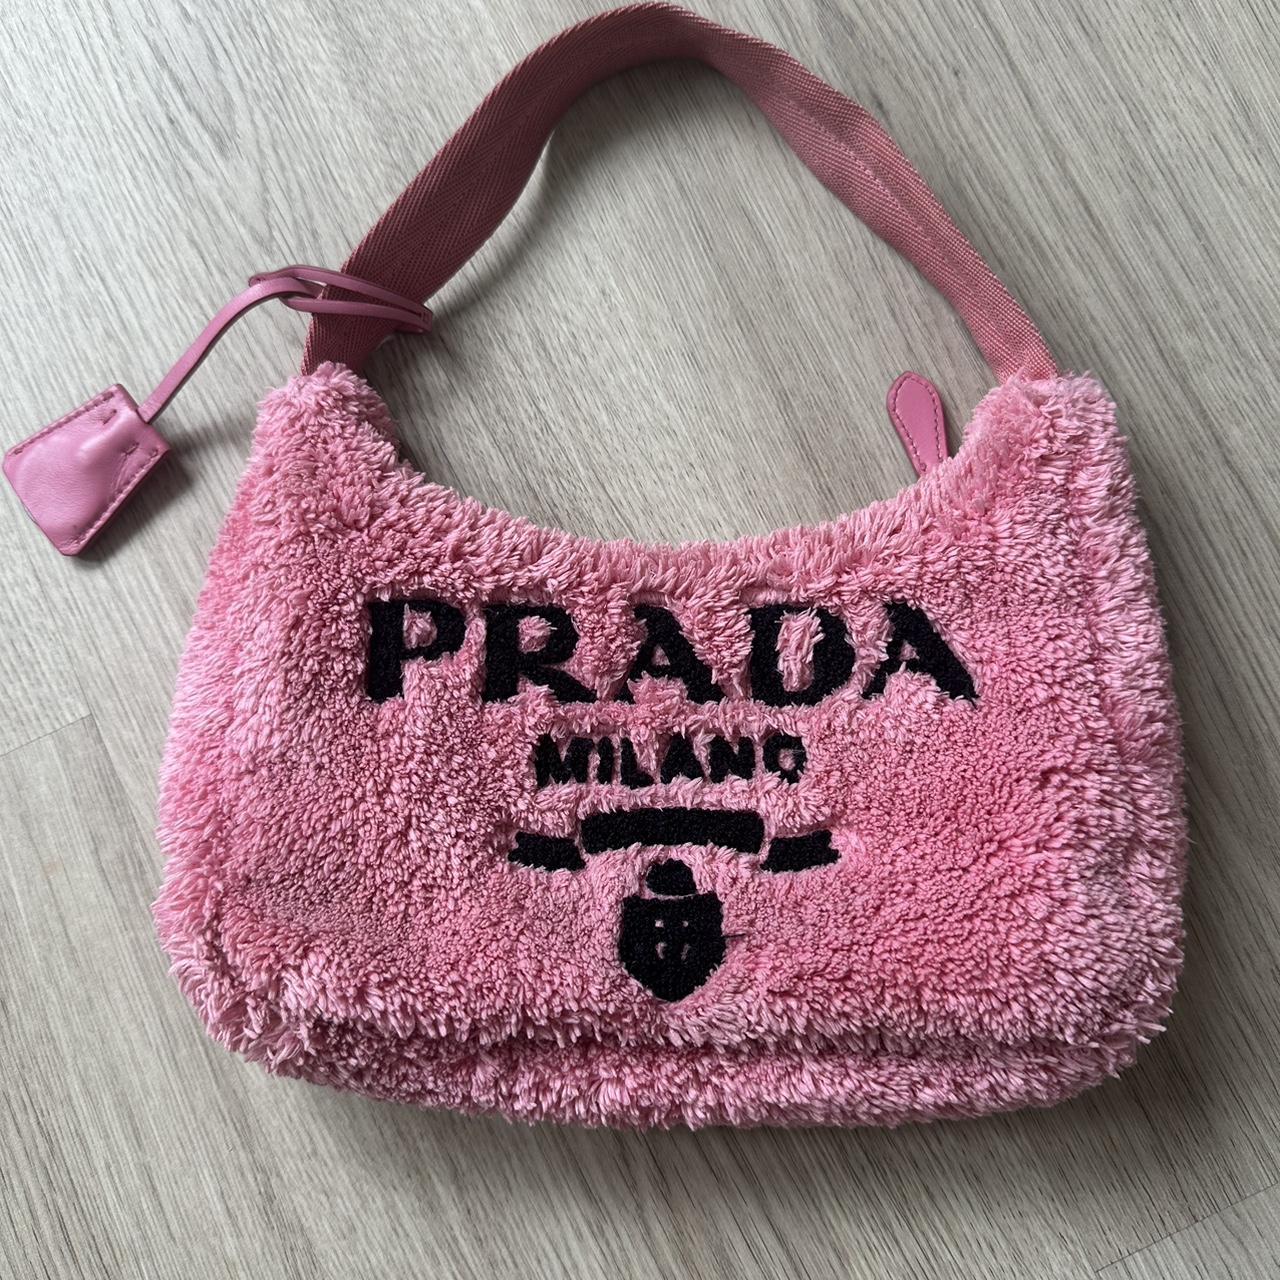 Dissona Italian Designer Pink Leather Shoulder Bag! - Depop